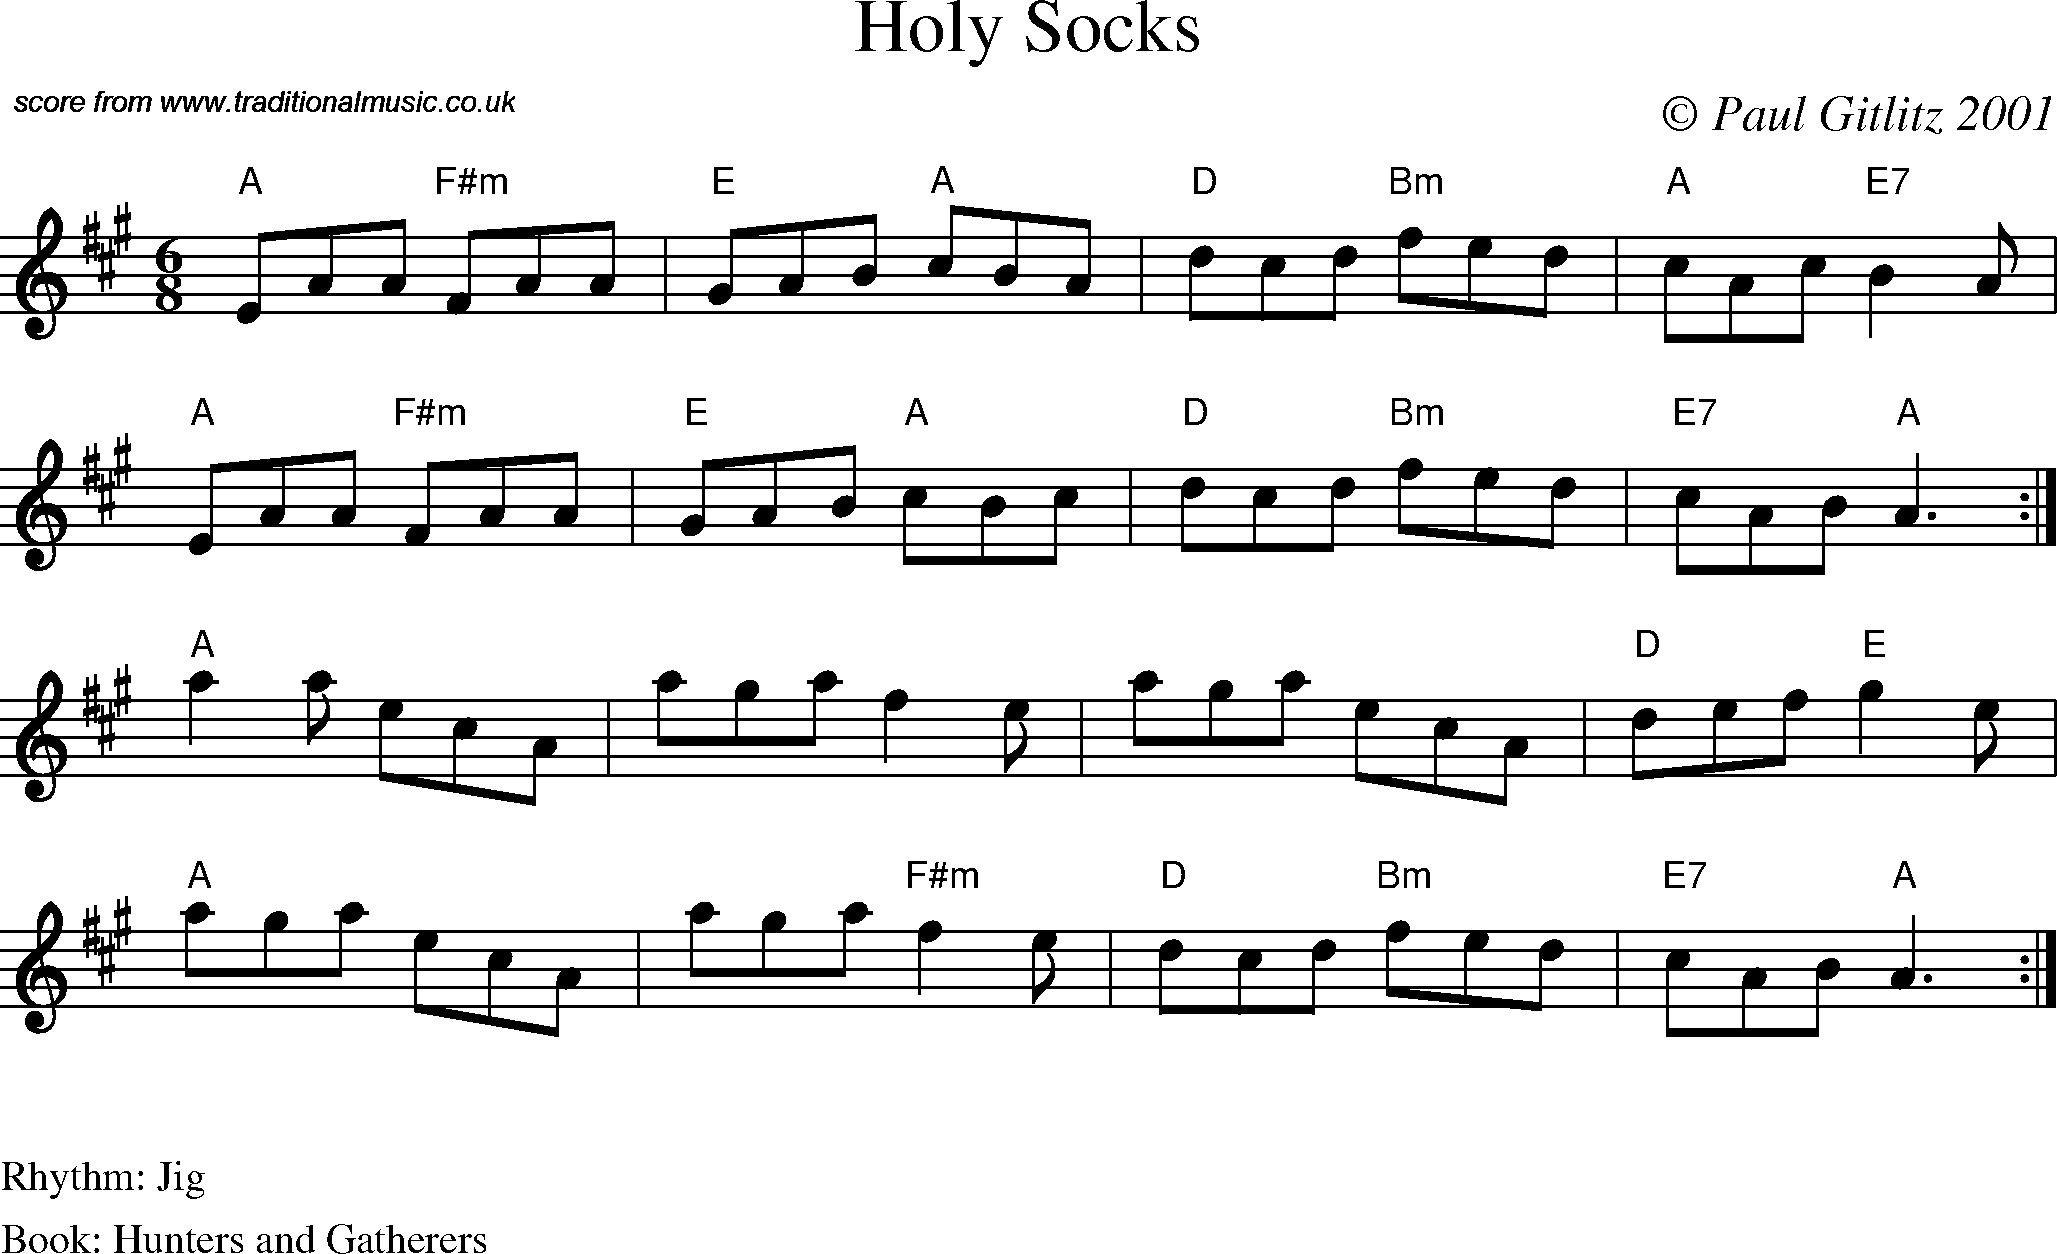 Sheet Music Score for Jig - Holy Socks